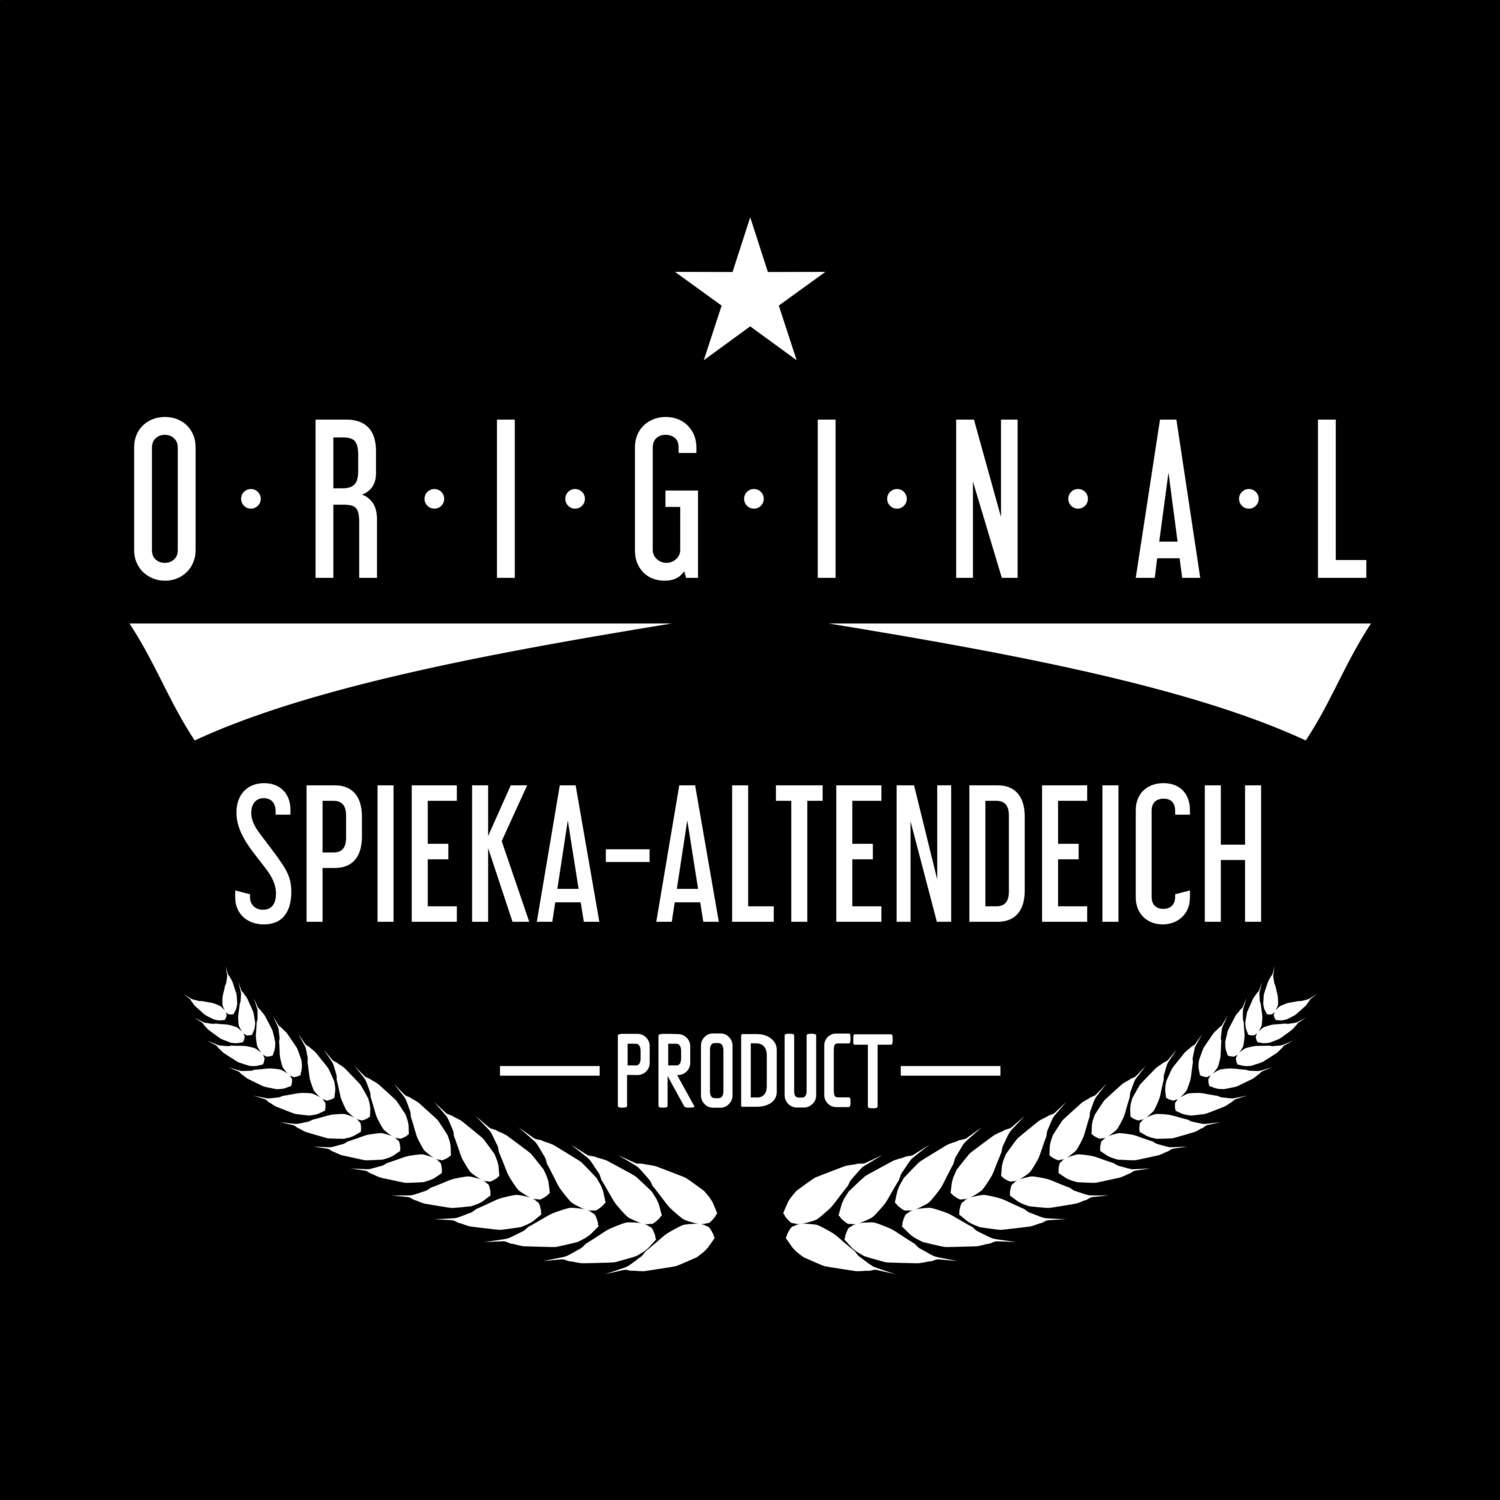 Spieka-Altendeich T-Shirt »Original Product«